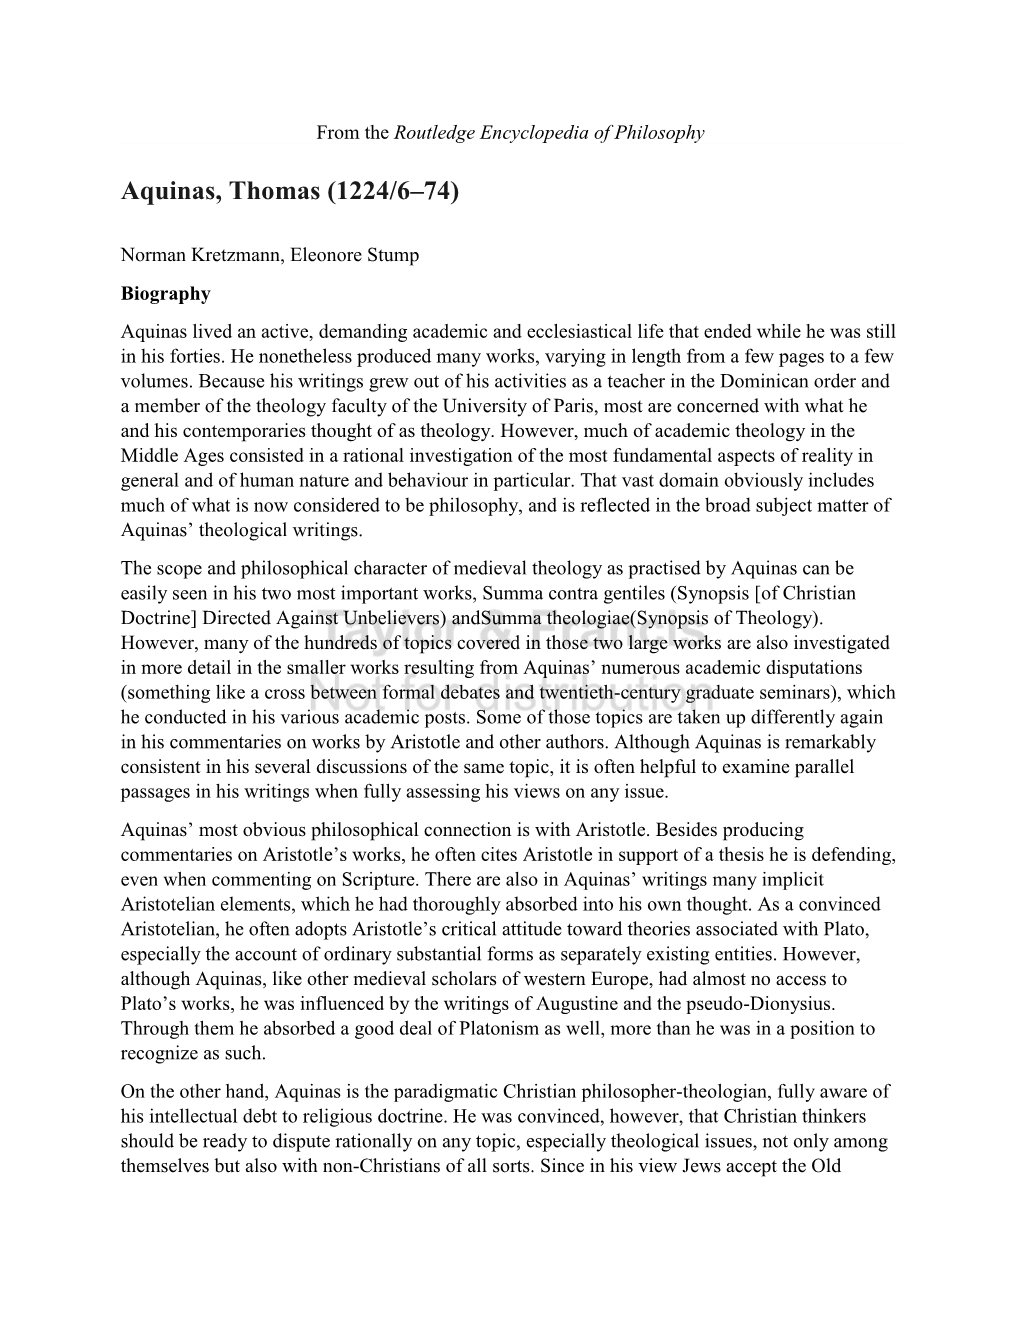 Aquinas, Thomas (1224/6–74)